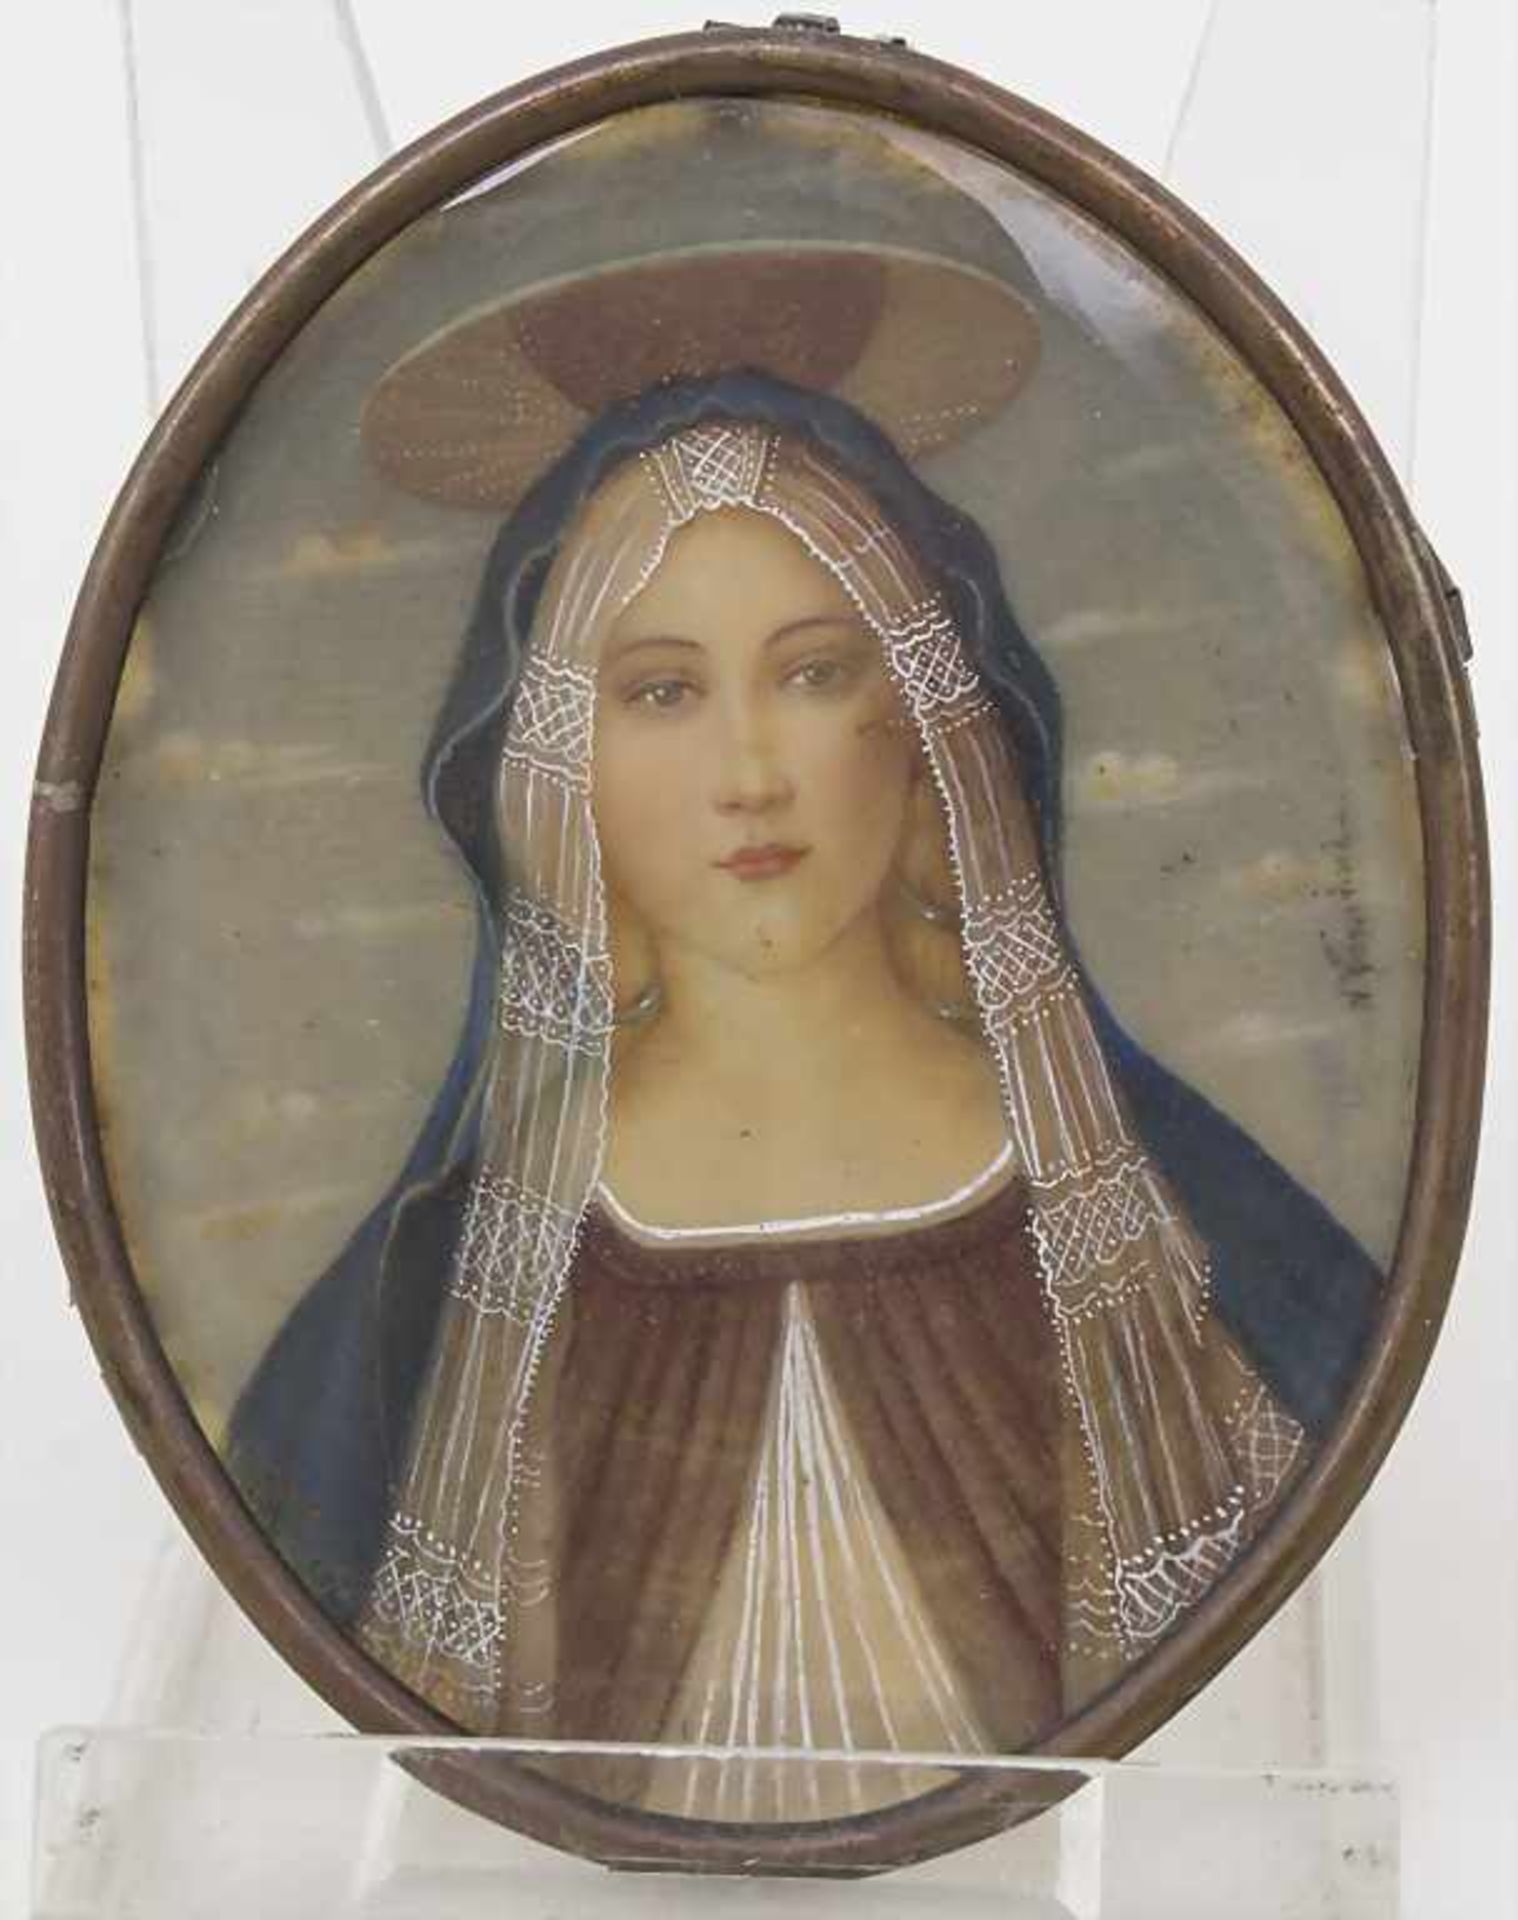 Ovales Minuatur Portrait der hl. Jungfrau Maria / An oval miniature portrait of the Holy Virgin